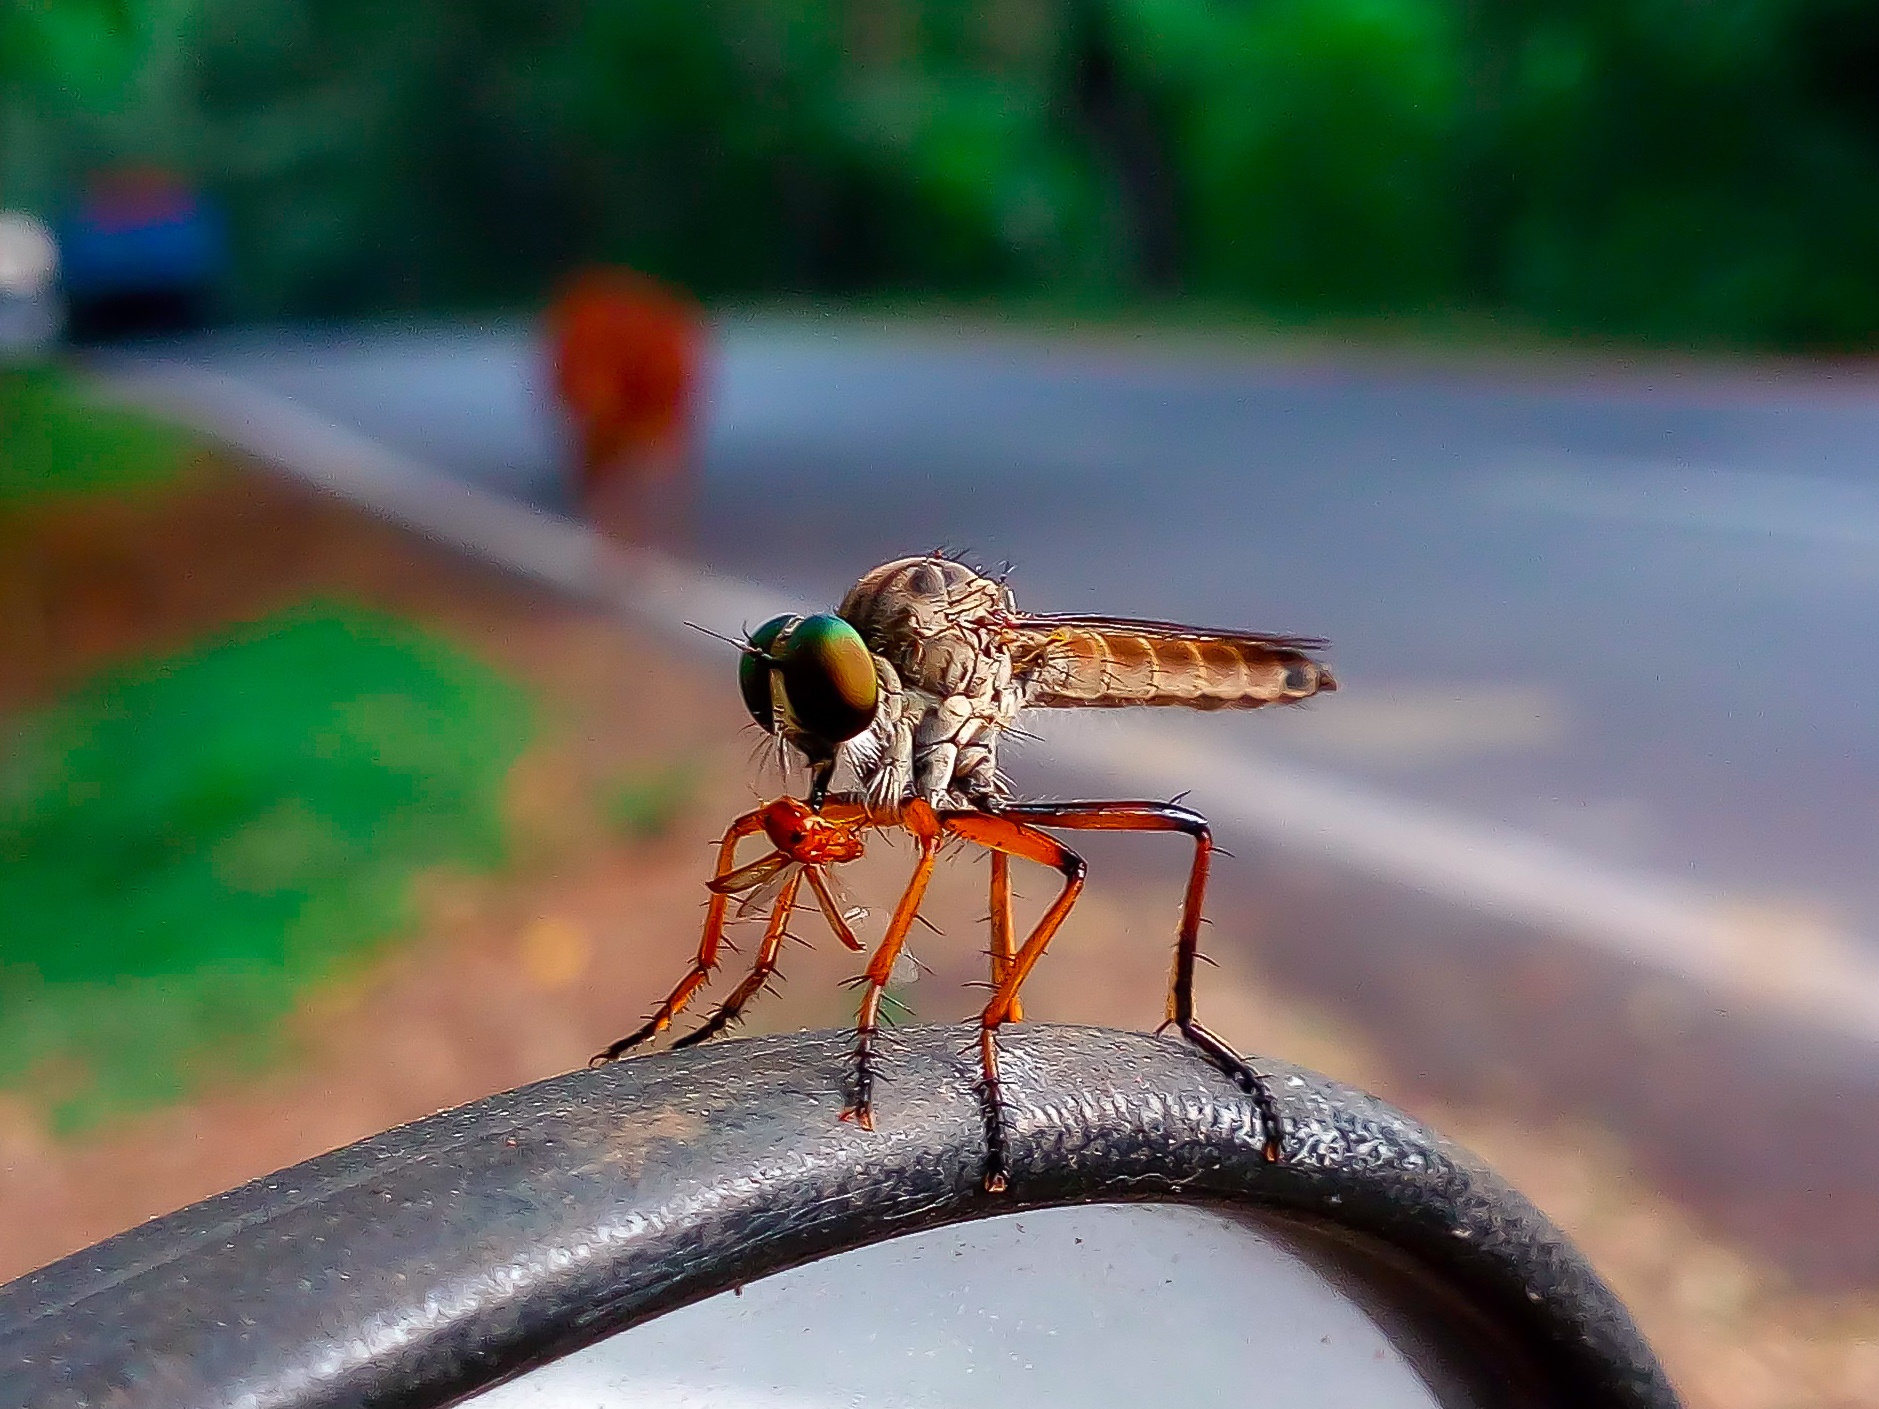 Delhi Sands flower-loving fly